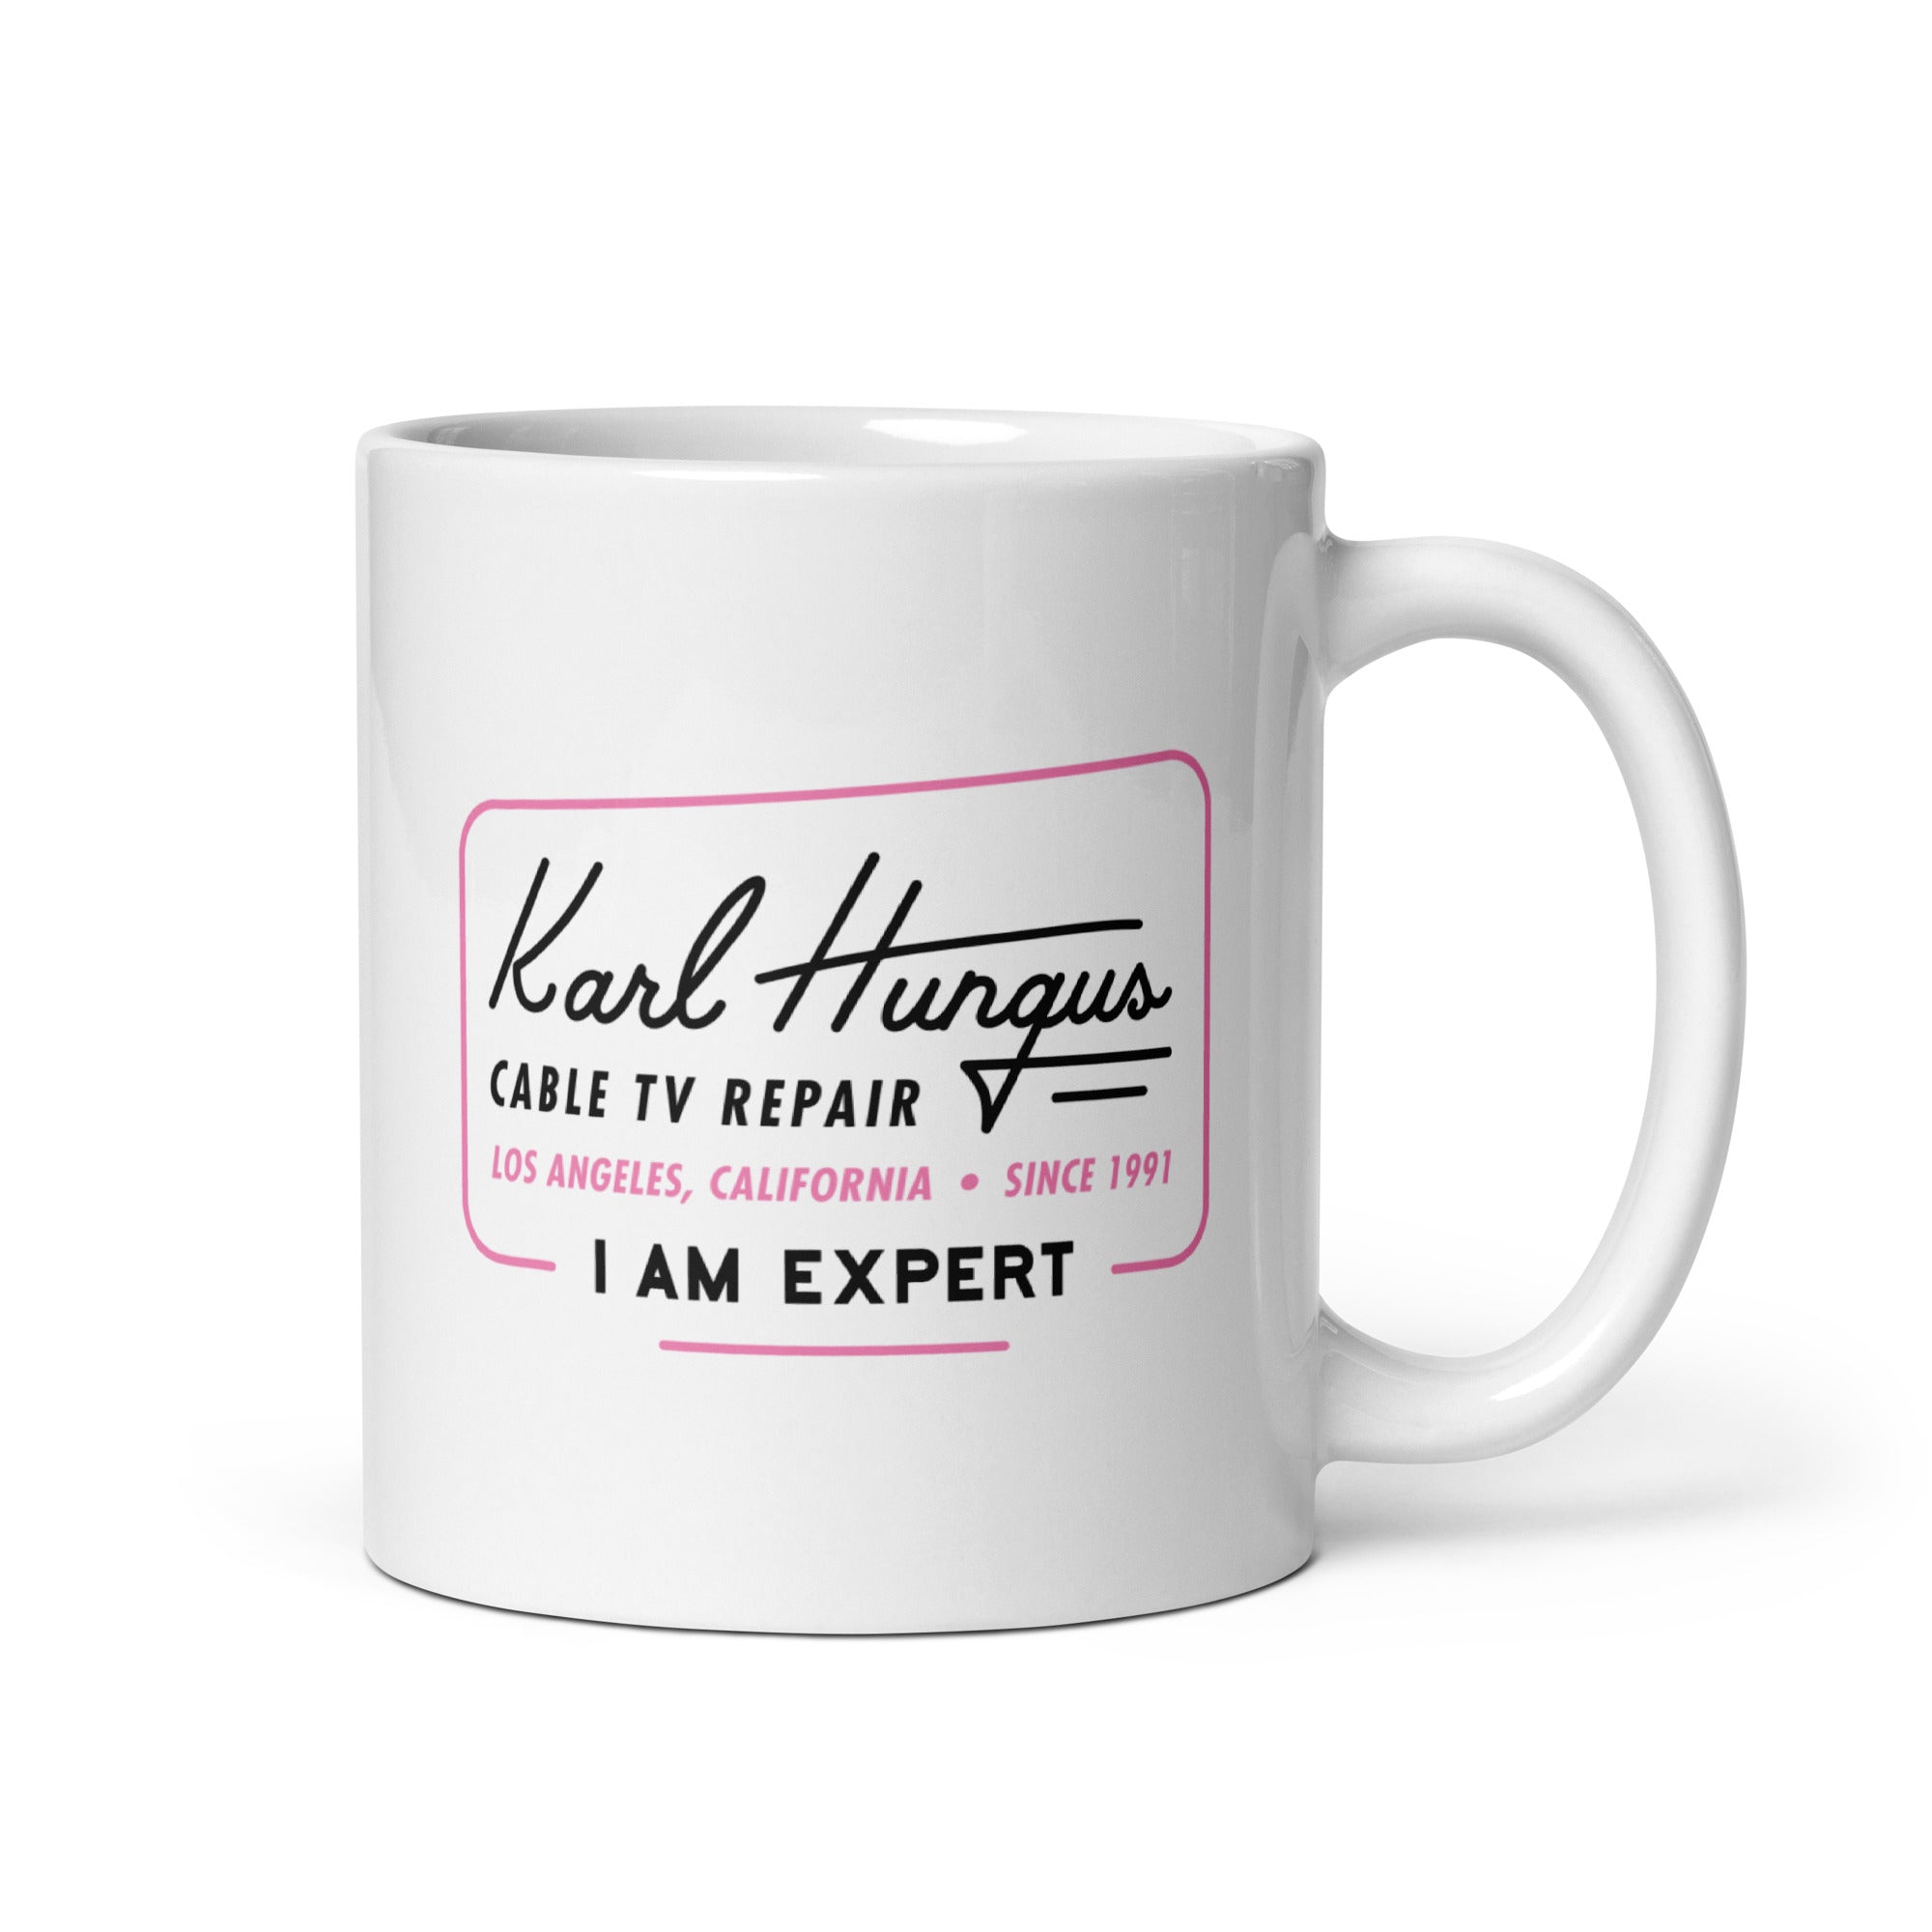 Karl Hungus Cable TV Repair - I am Expert - 11oz Coffee Mug